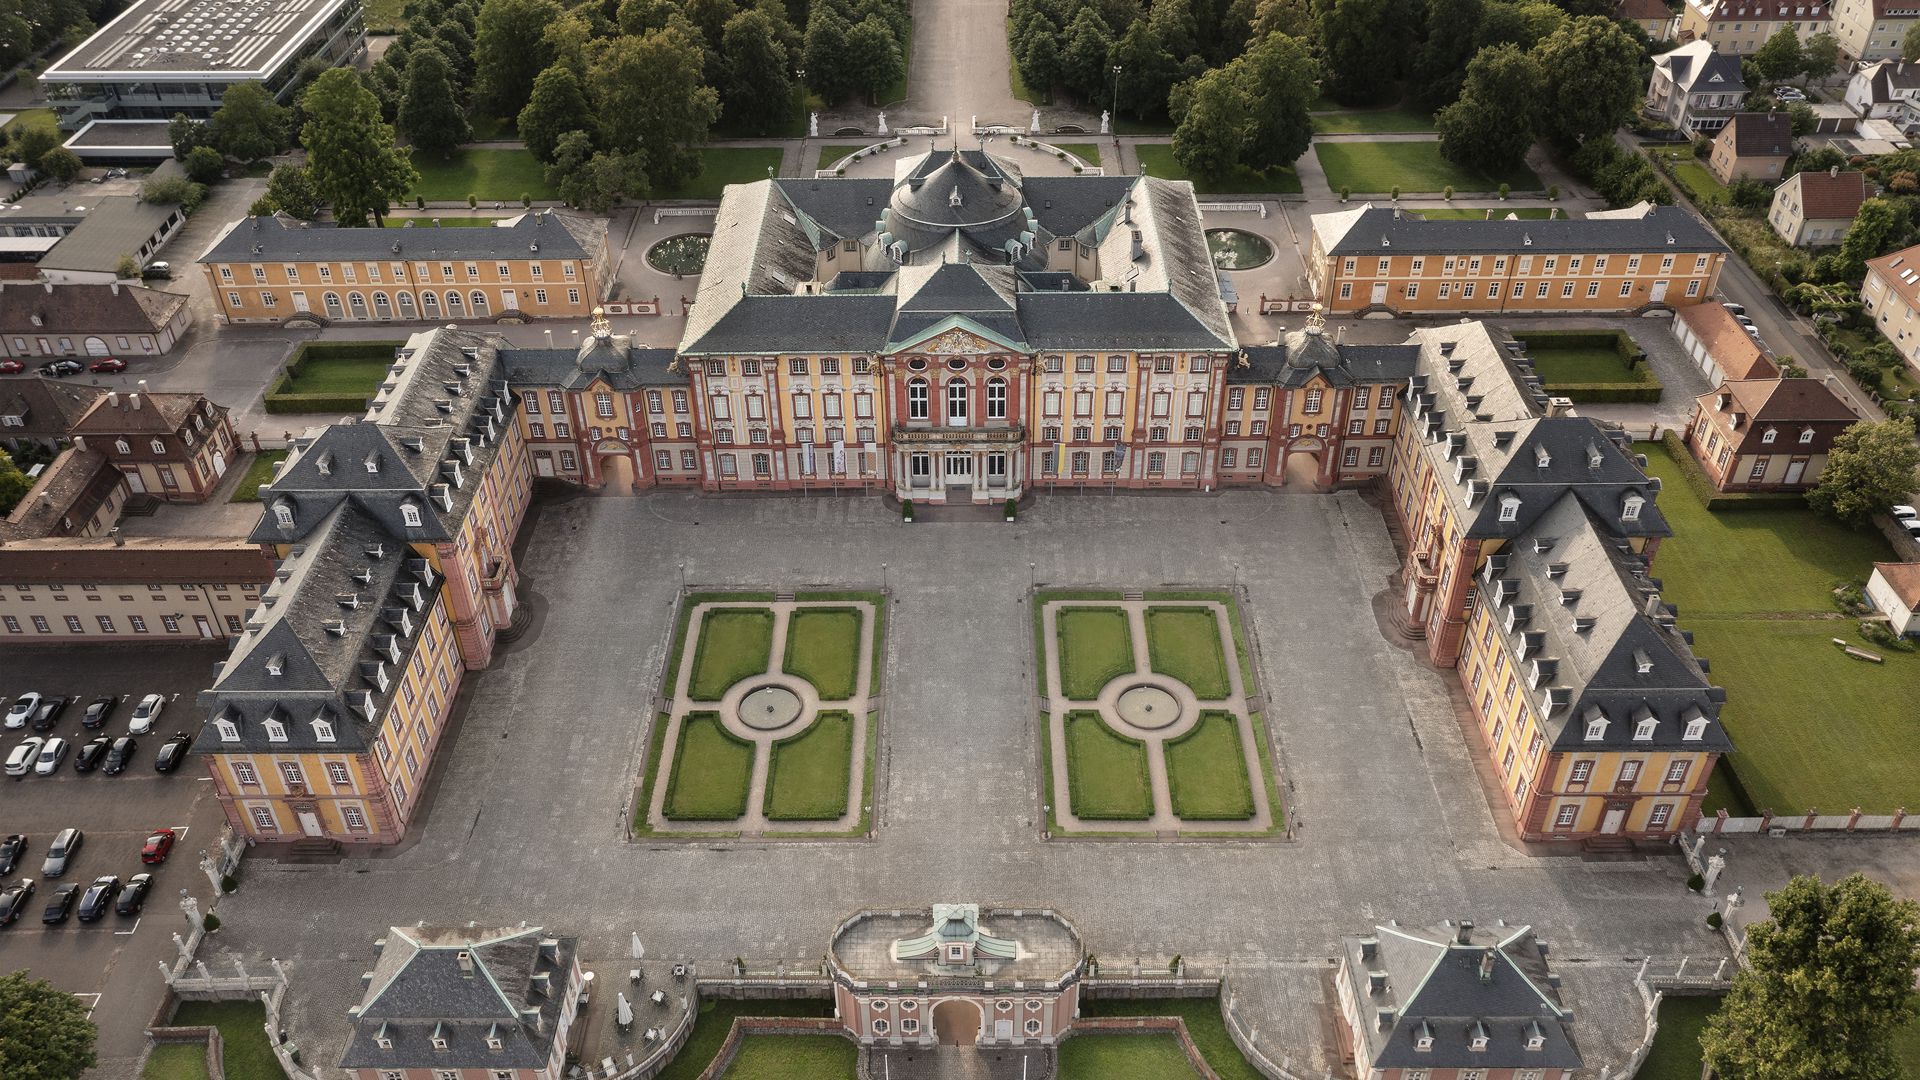 Passend zu den Feierlichkeiten zu 300 Jahren Schloss Bruchsal findet vom 23. bis zum 29. Mai eine Jubiläumswoche mit buntem Programm rund um das historische Wahrzeichen statt.